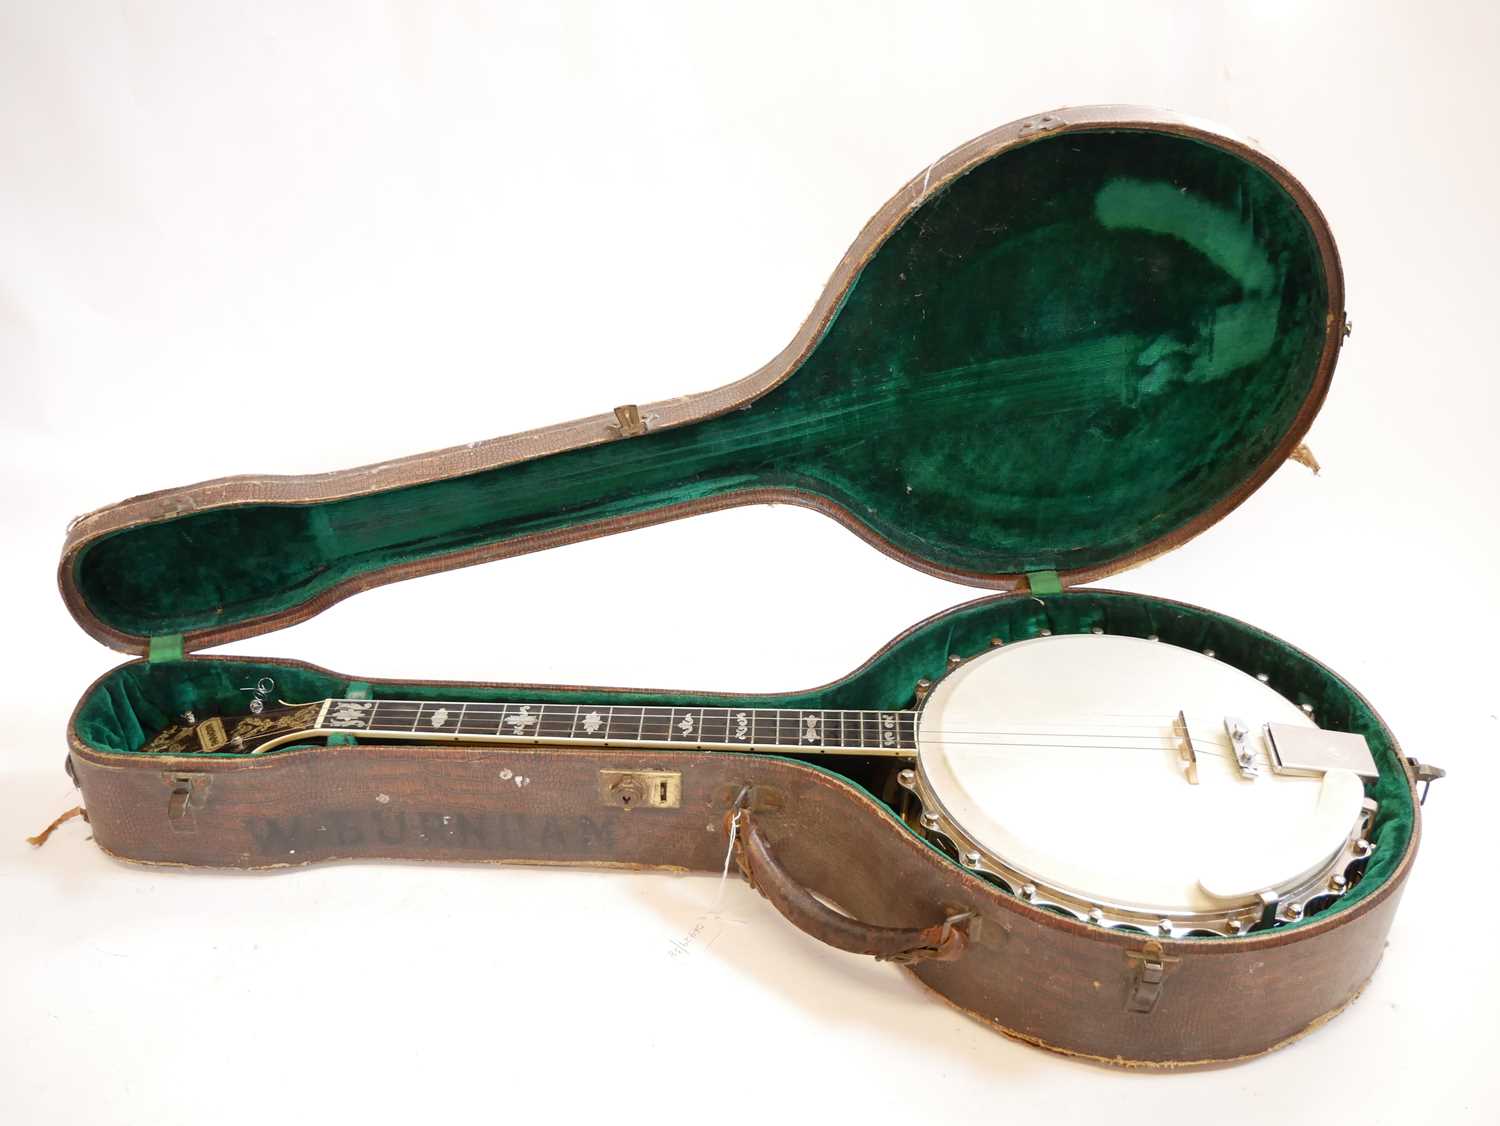 Clifford Essex paragon tenor banjo, - Image 10 of 22